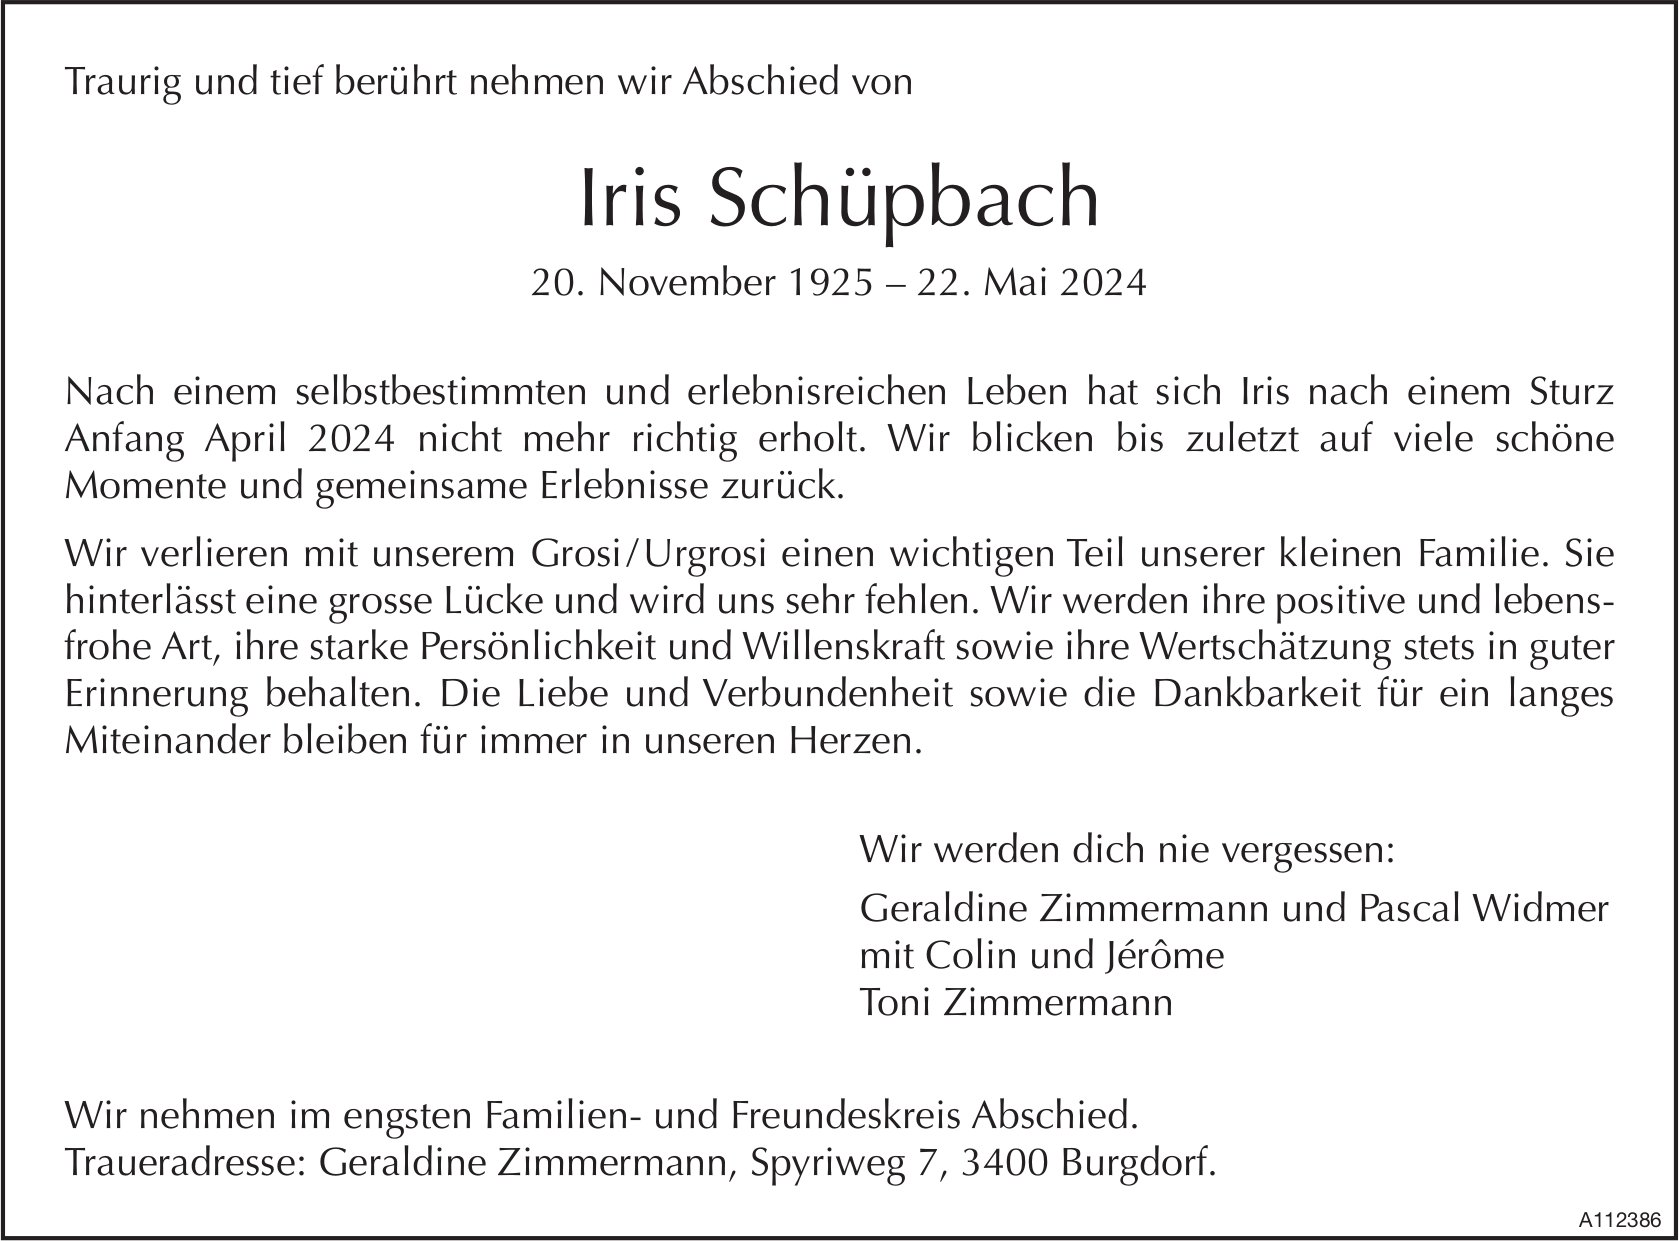 Iris Schüpbach, Mai 2024 / TA